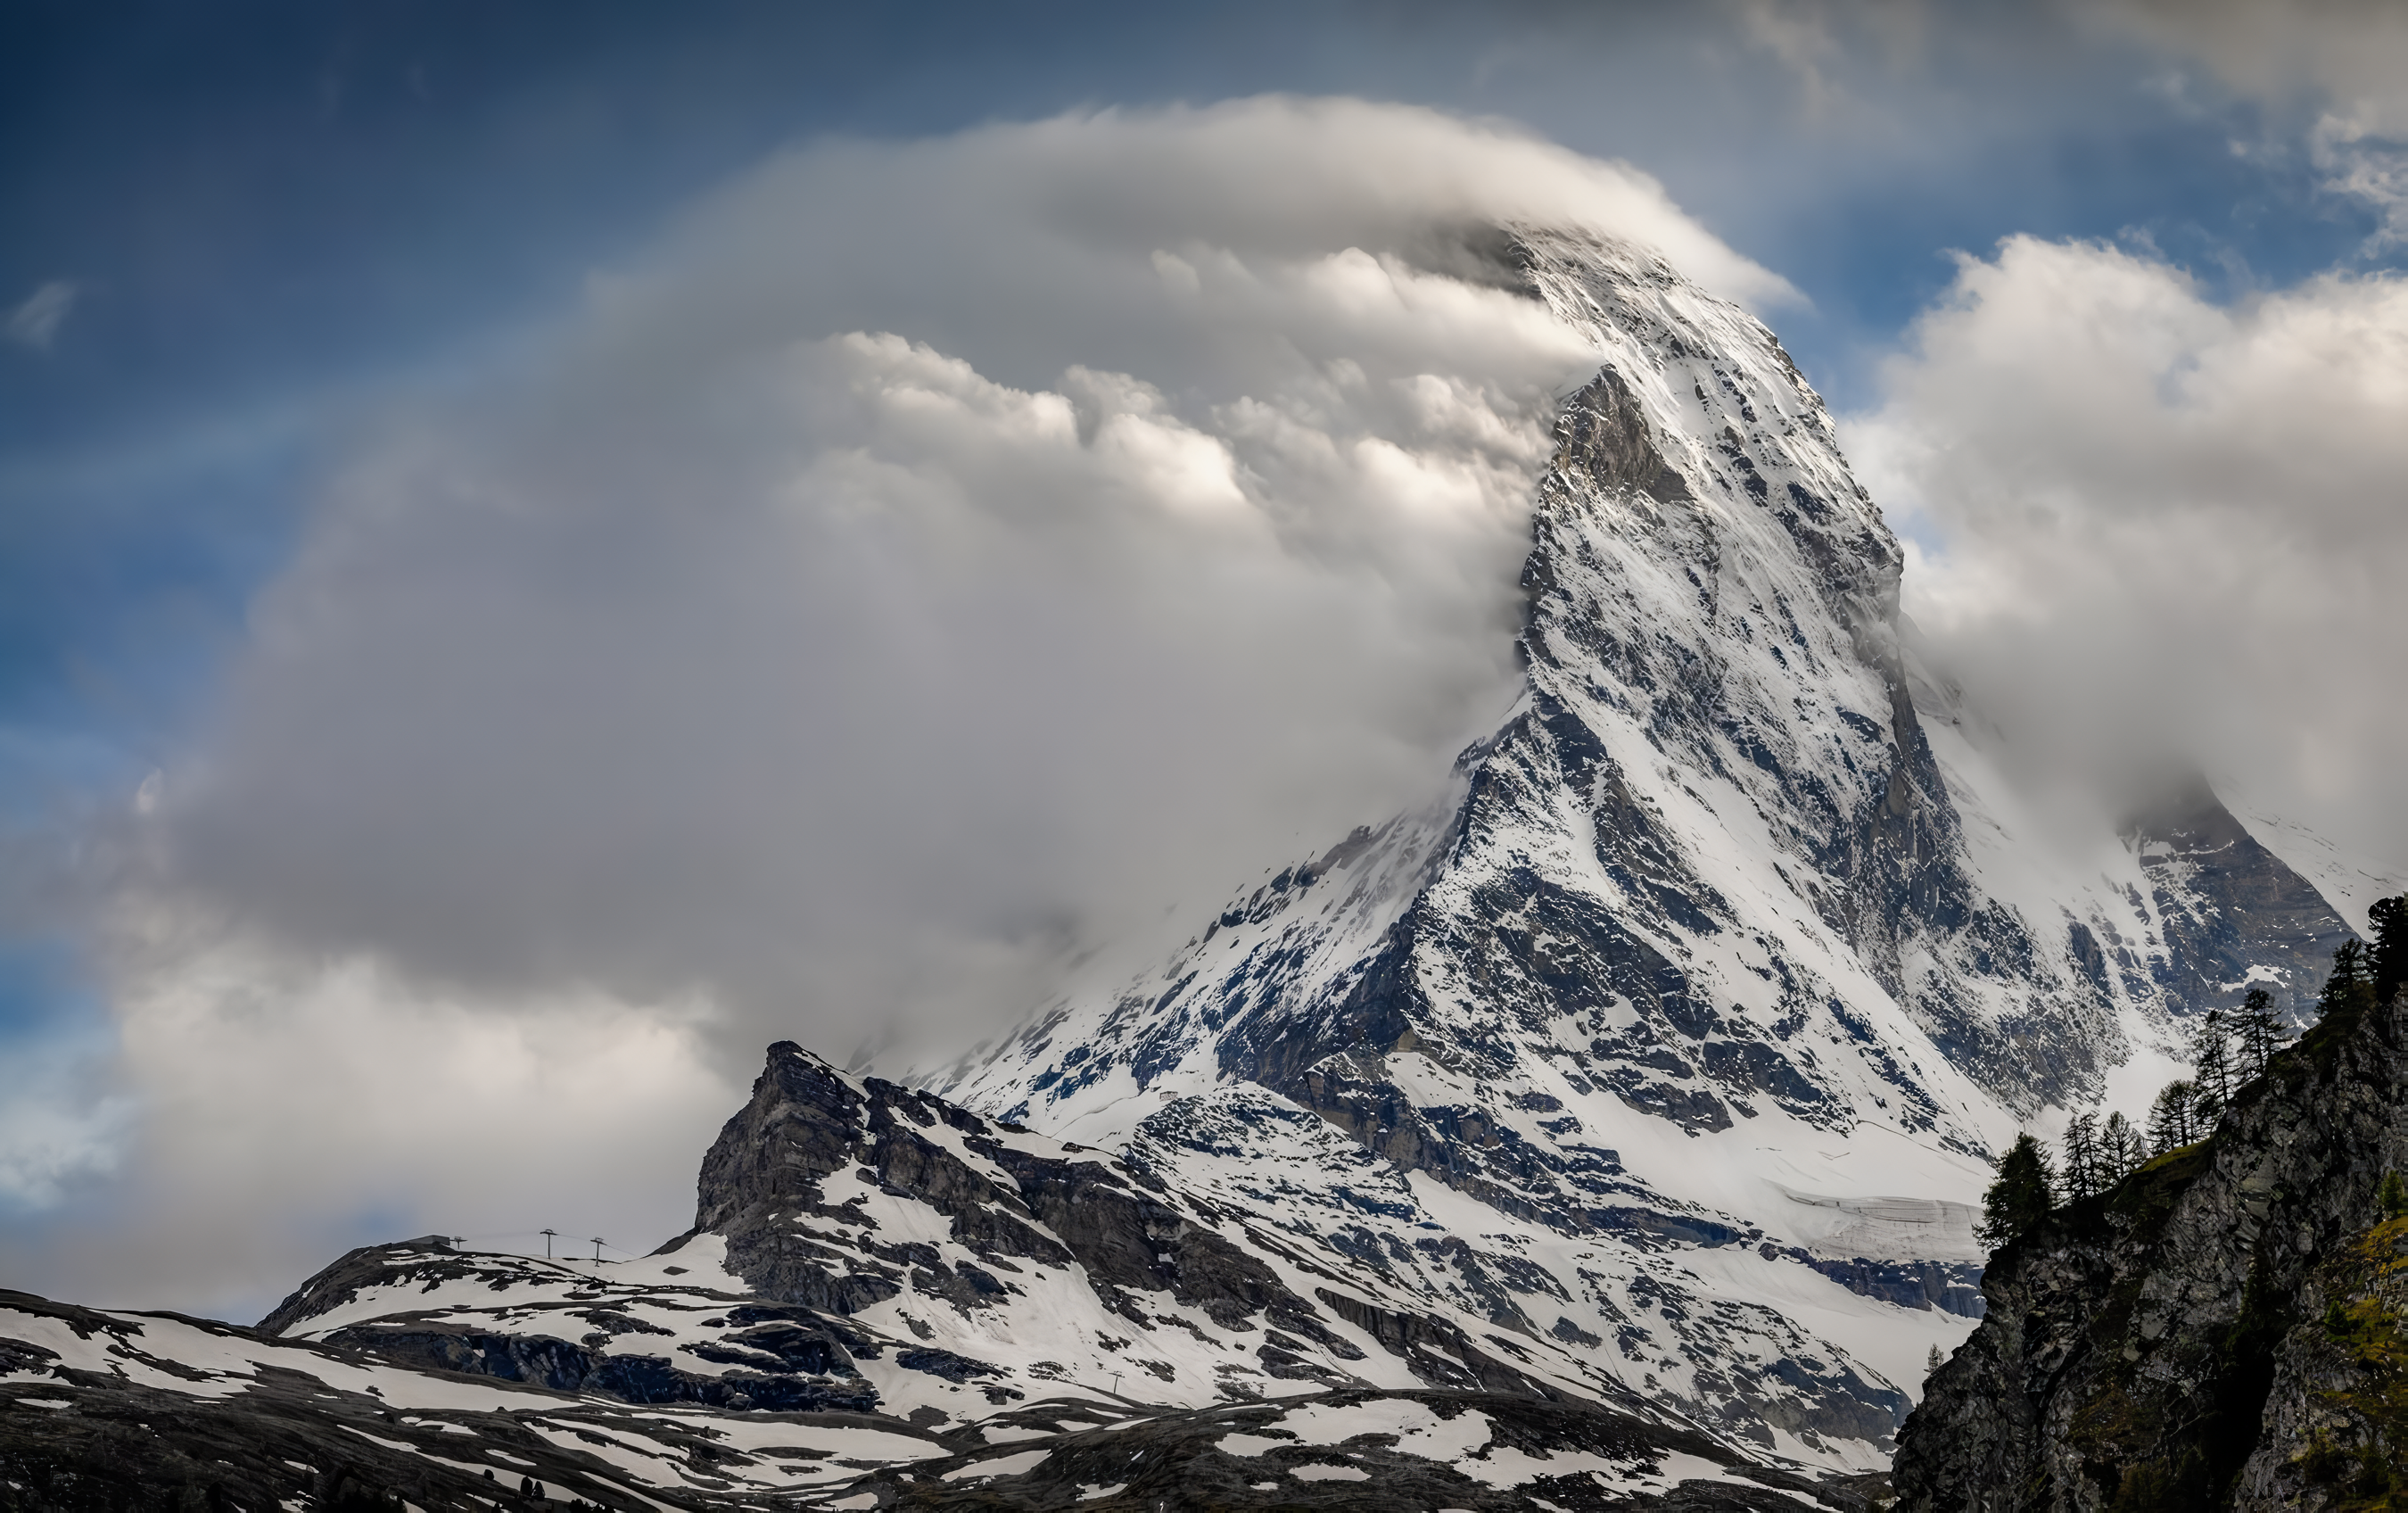 General 2700x1696 mountains snow clouds nature sky Matterhorn Switzerland